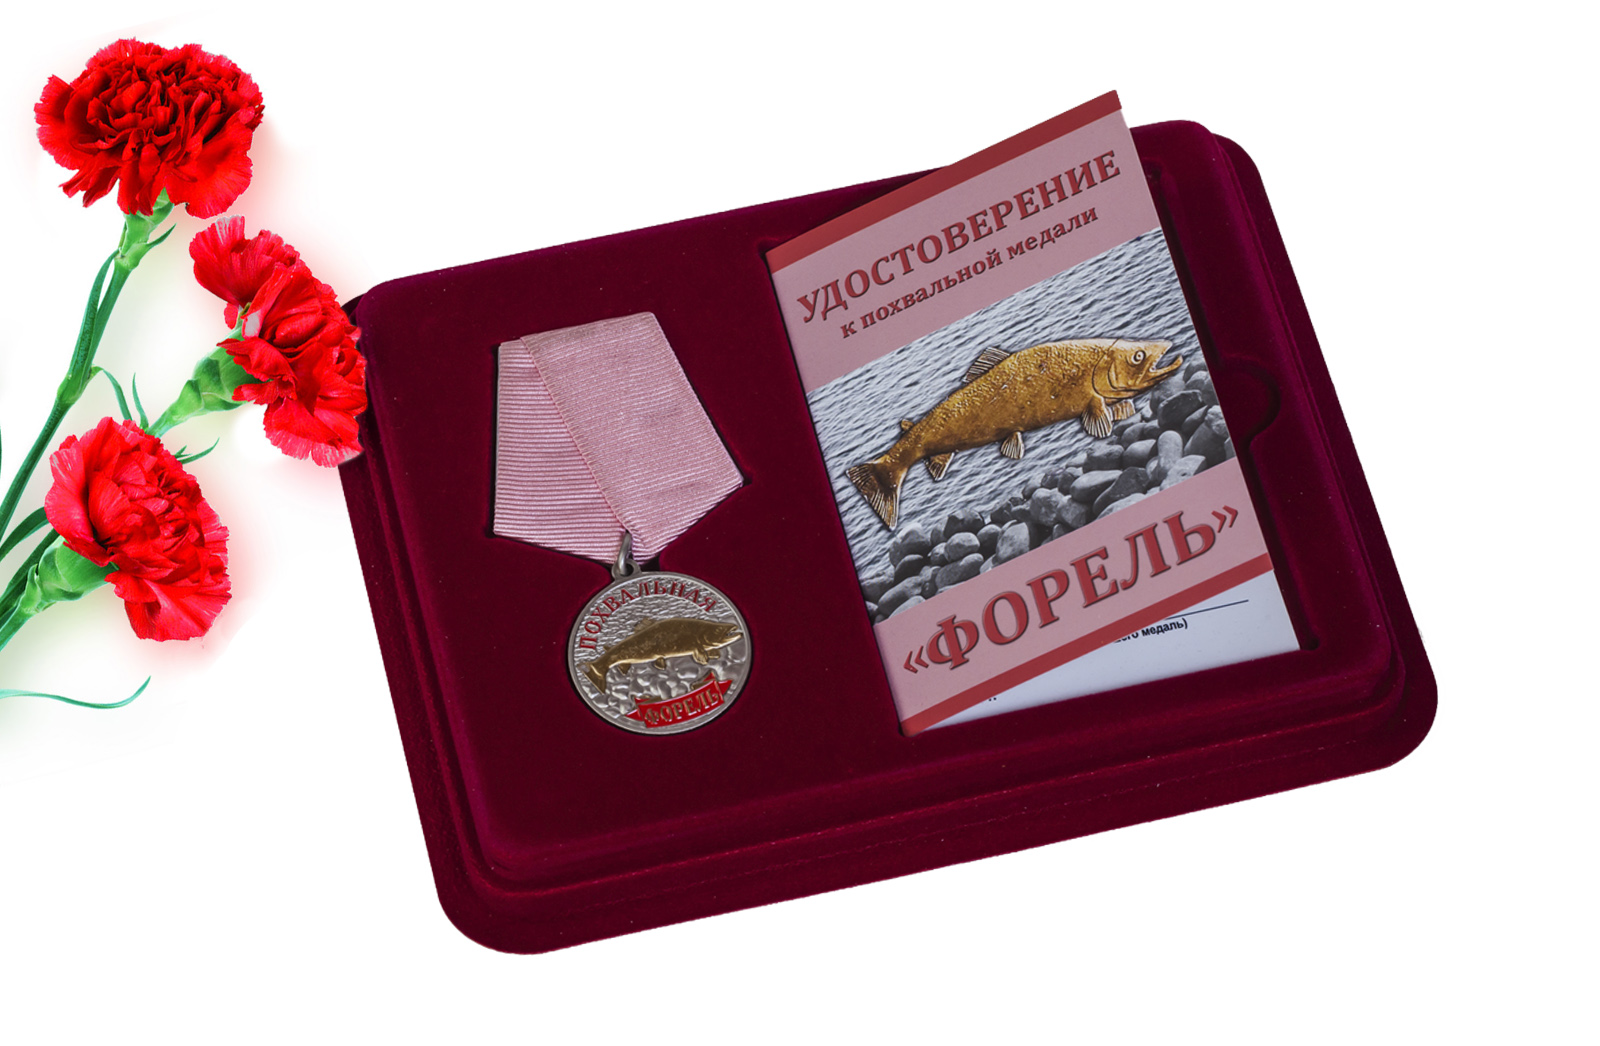 Купить медаль похвальную Форель с доставкой или самовывозом